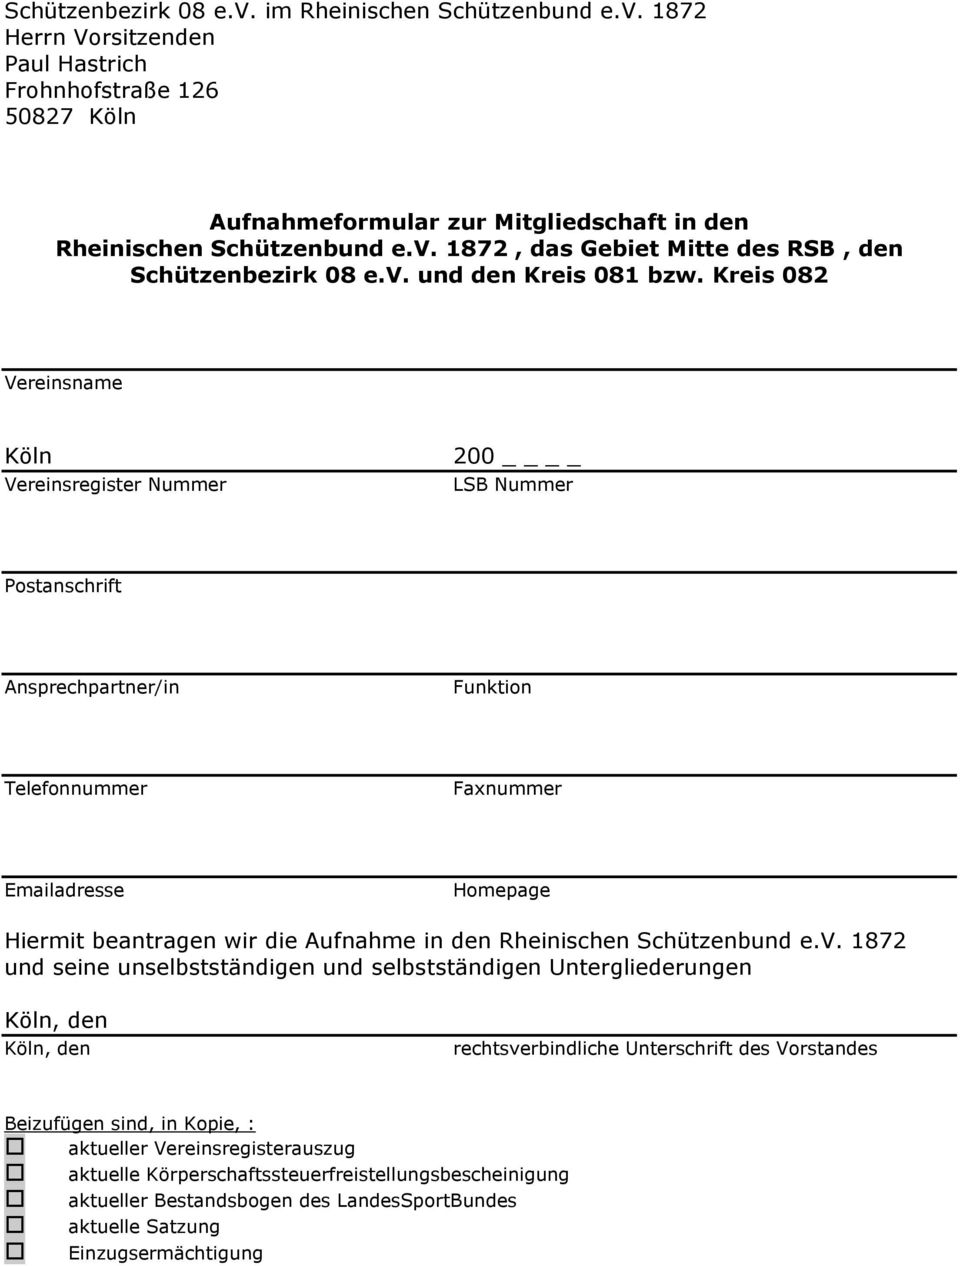 Aufnahme in den Rheinischen Schützenbund e.v.